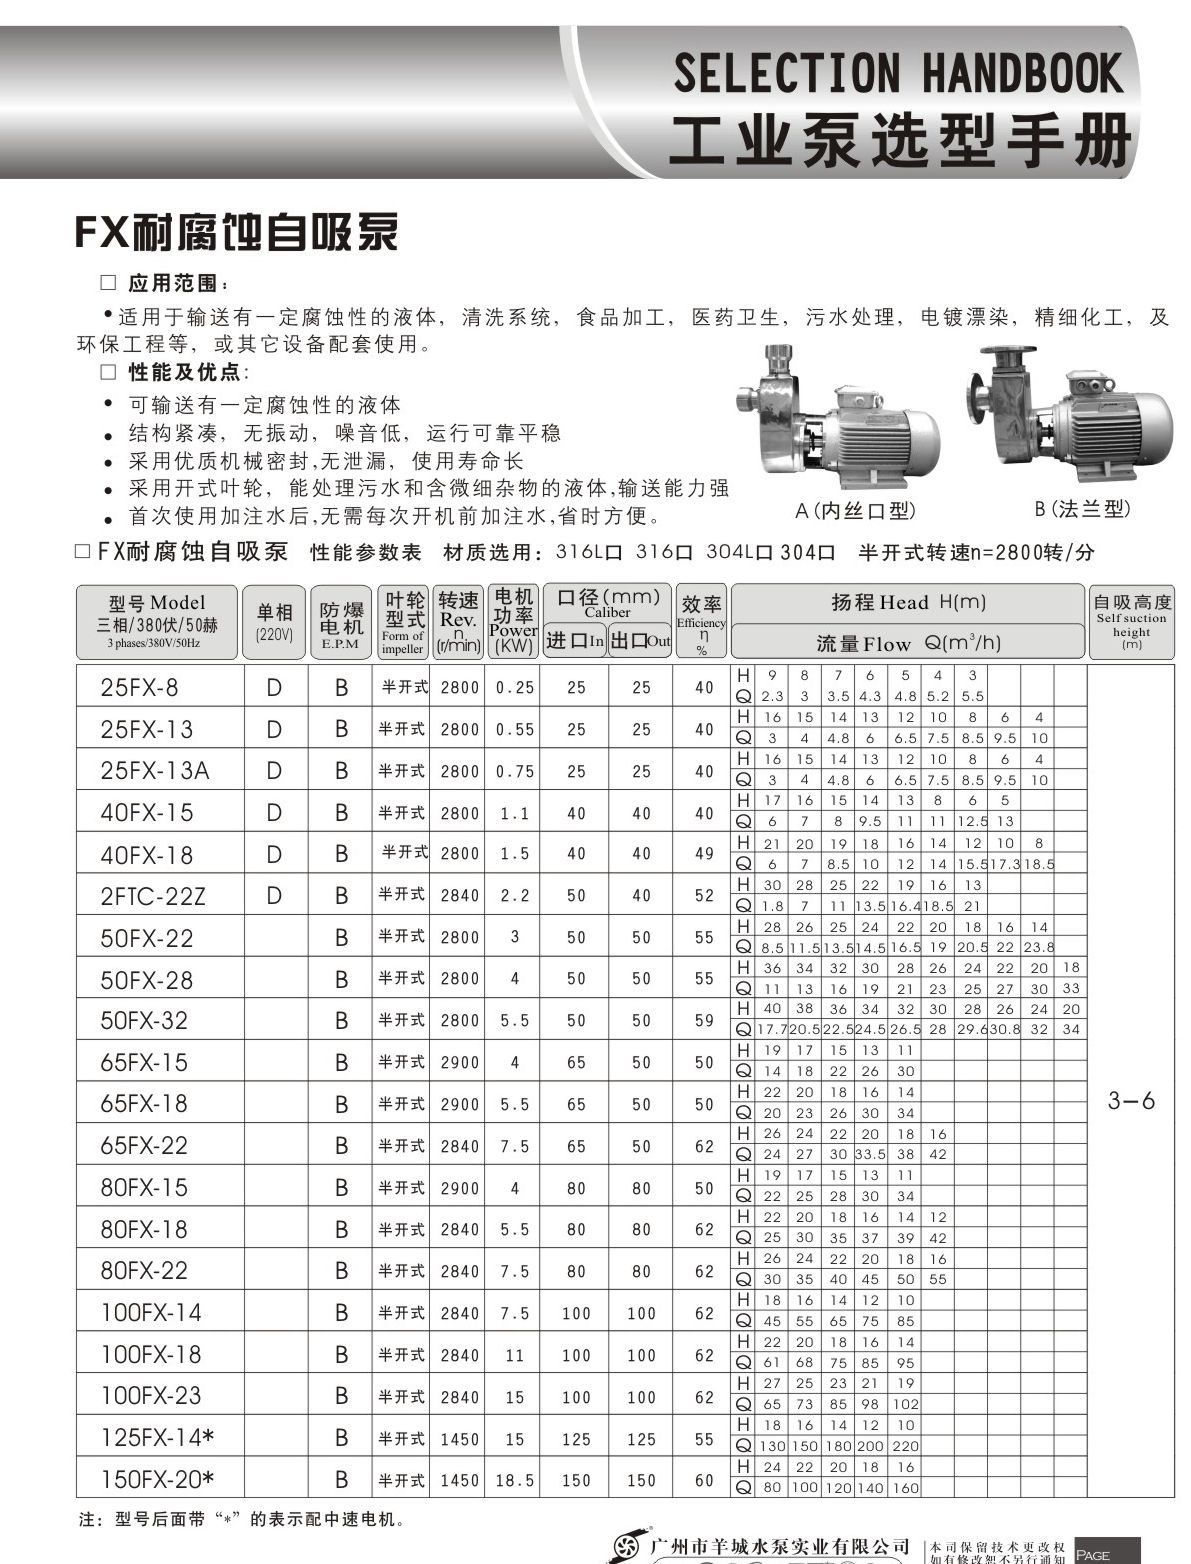 羊城水泵|40FX-13|FX耐腐蚀自吸泵|羊城泵业|广州羊城水泵厂